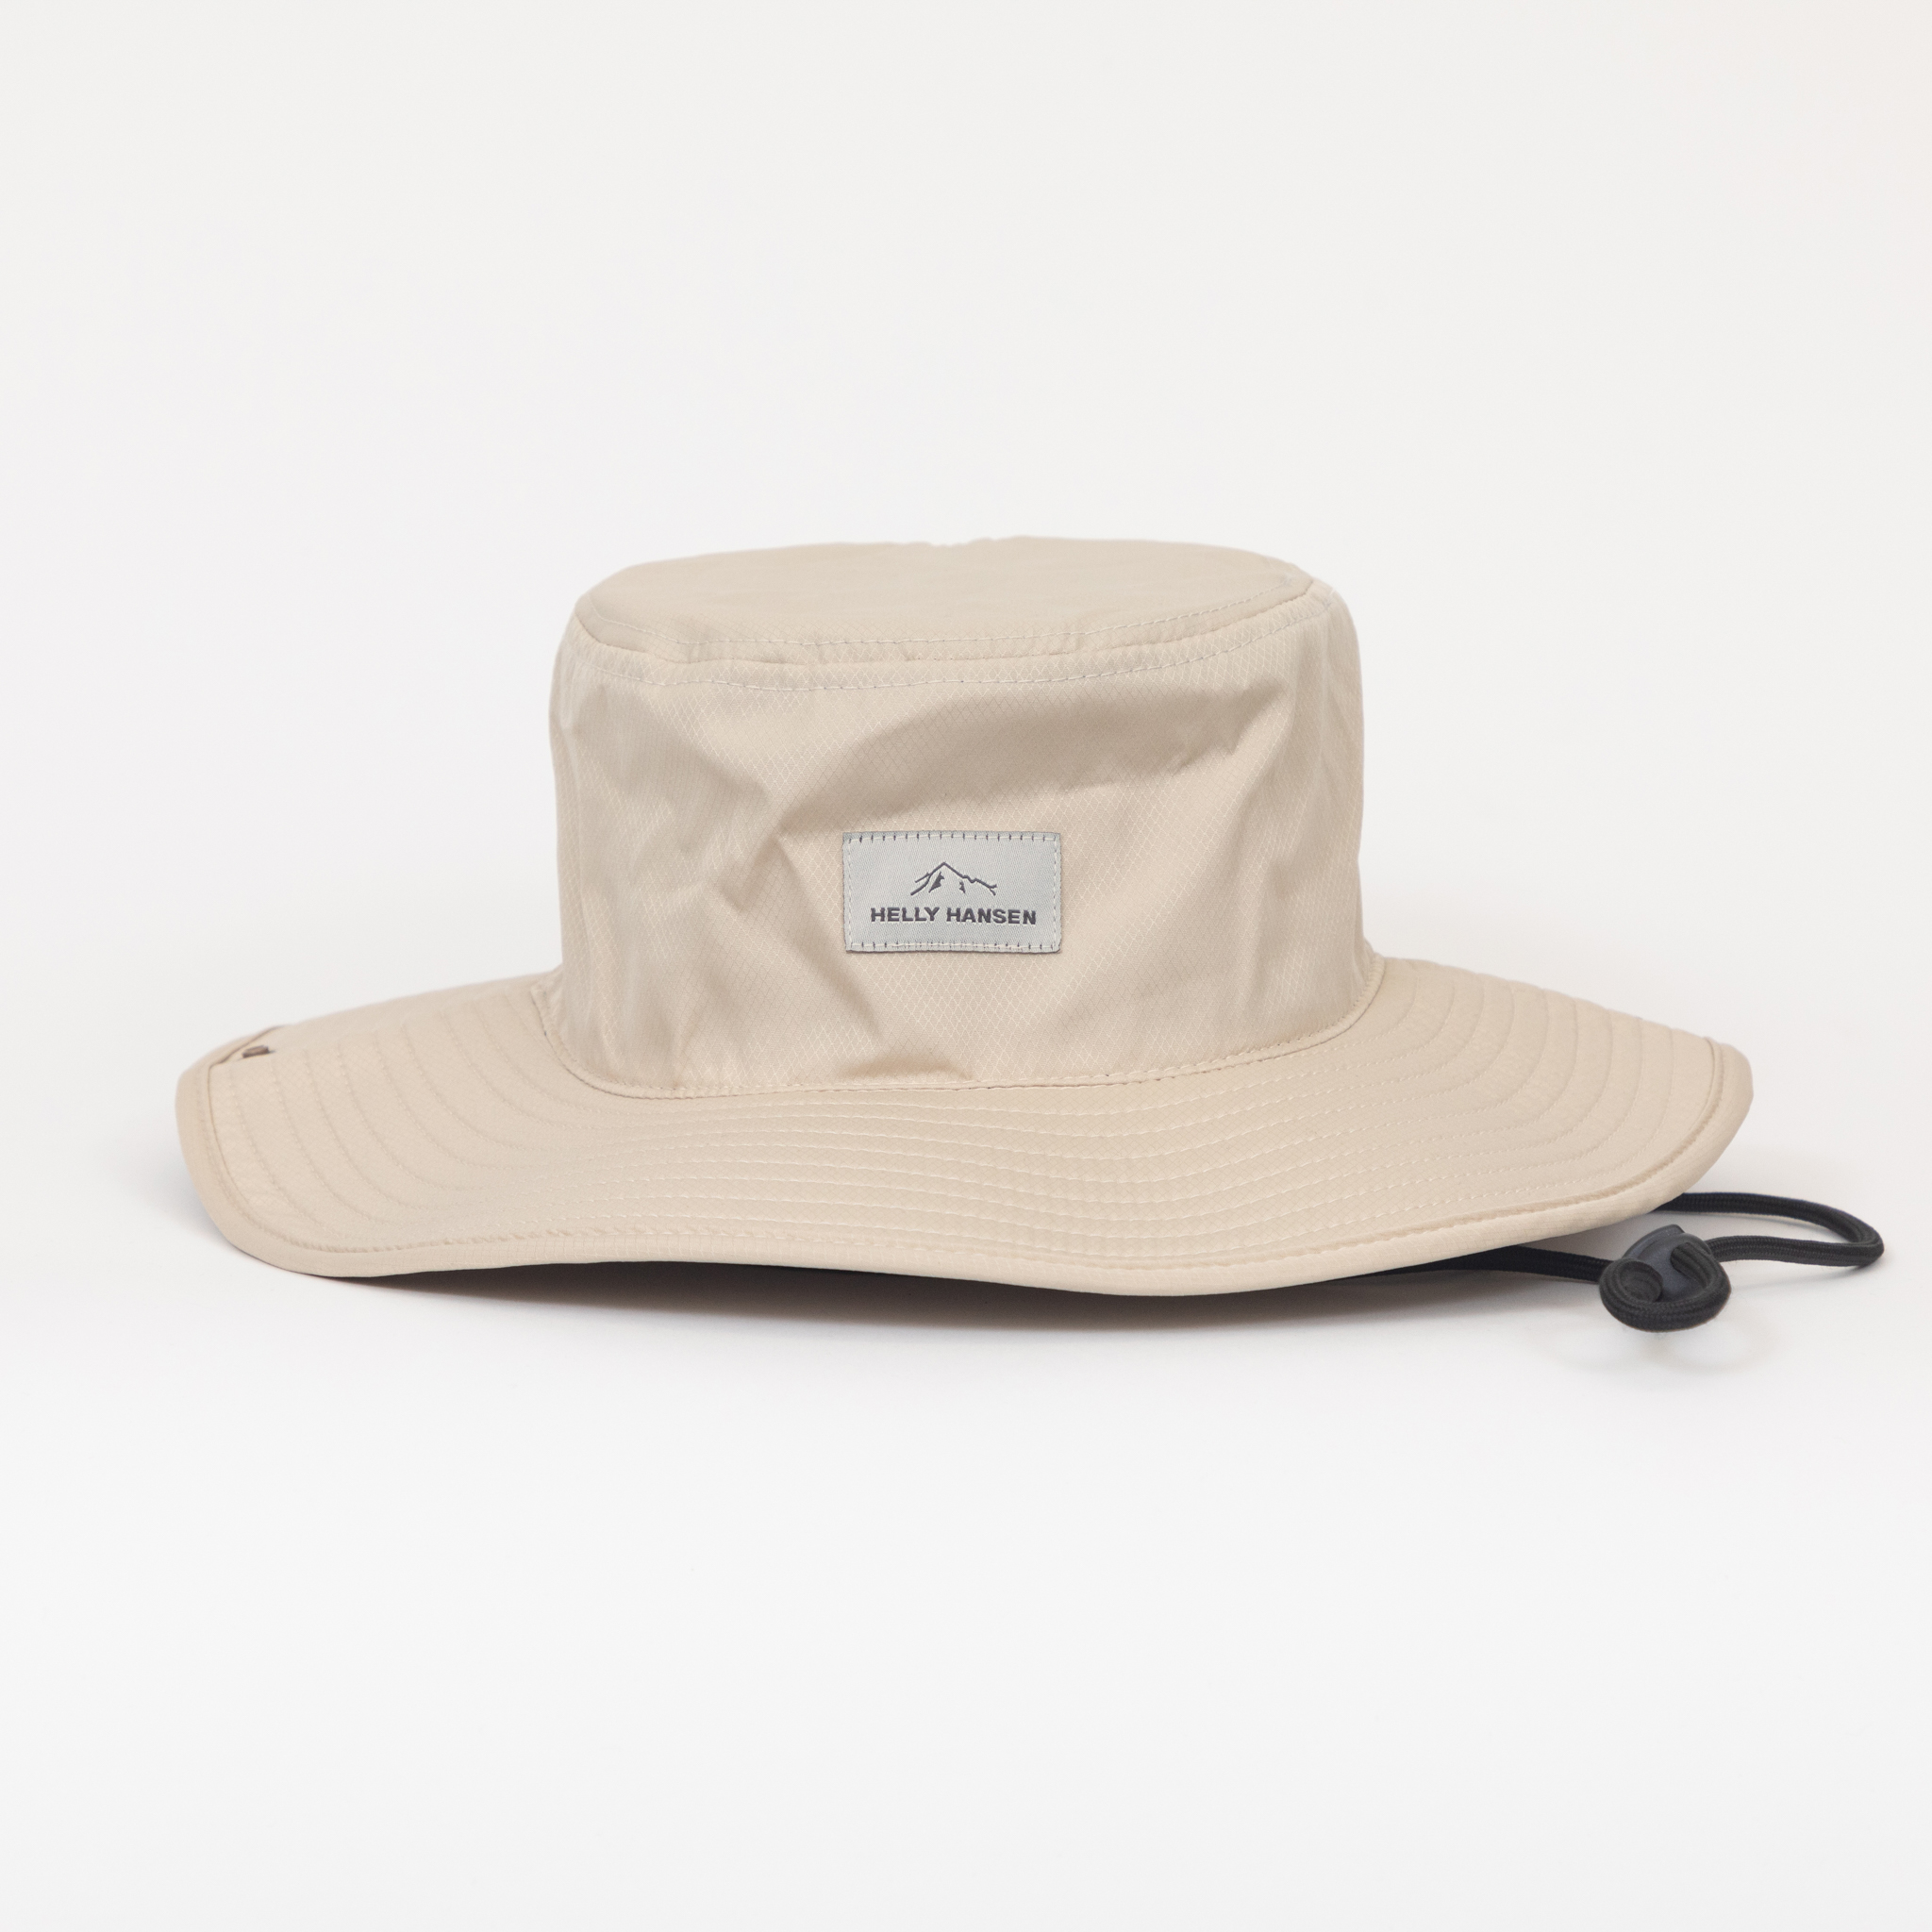 Helly Hansen Roam Brimmed Hat 2.0 in Cream